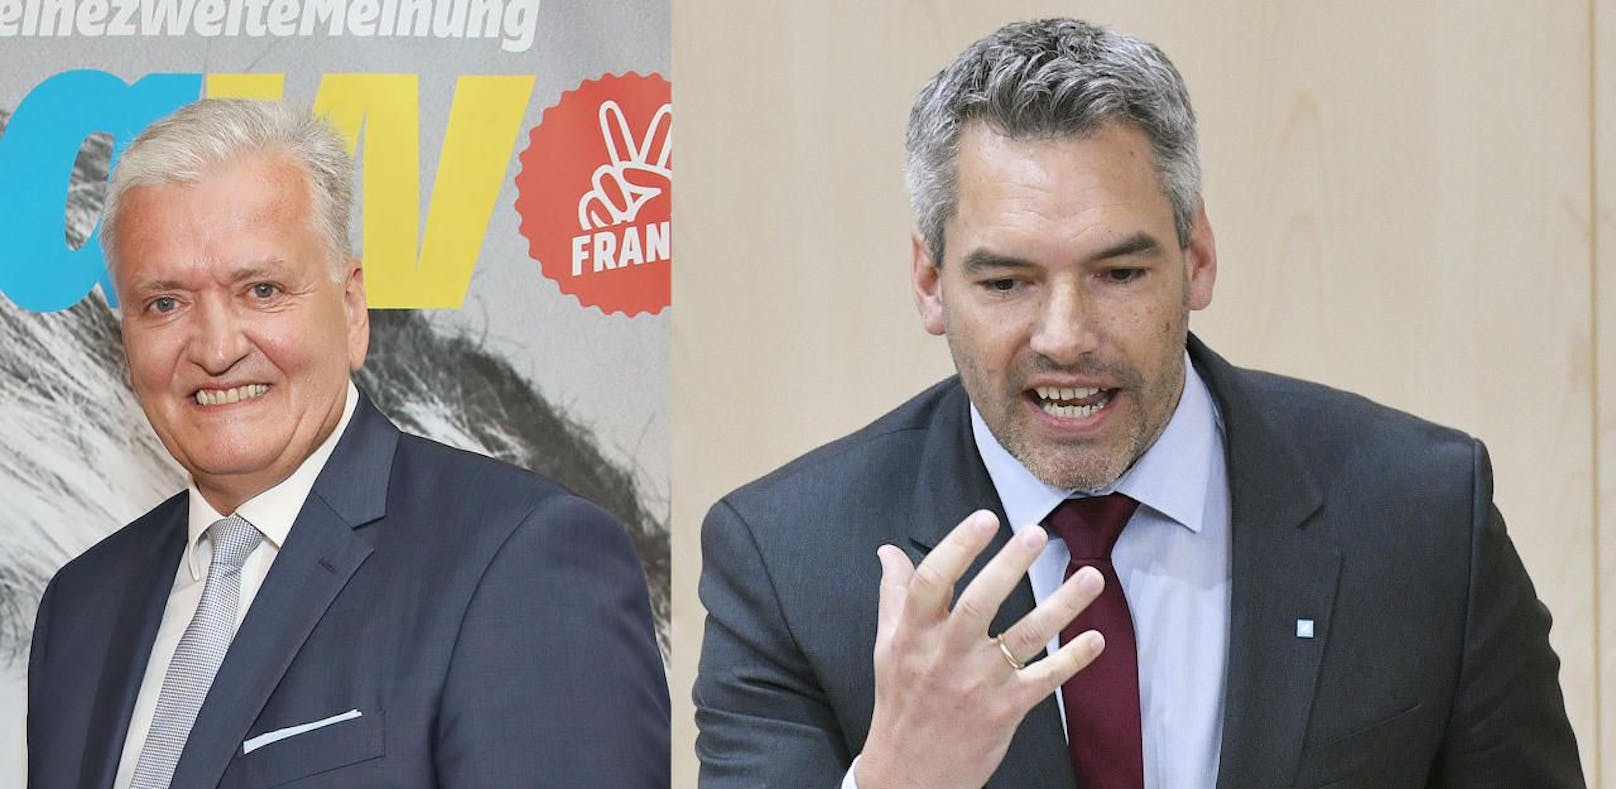 Karl Nehammer (re.), Generalsekretär der ÖVP von Sebastian Kurz, fordert den Rücktritt von Franz Schnabl (li.)
